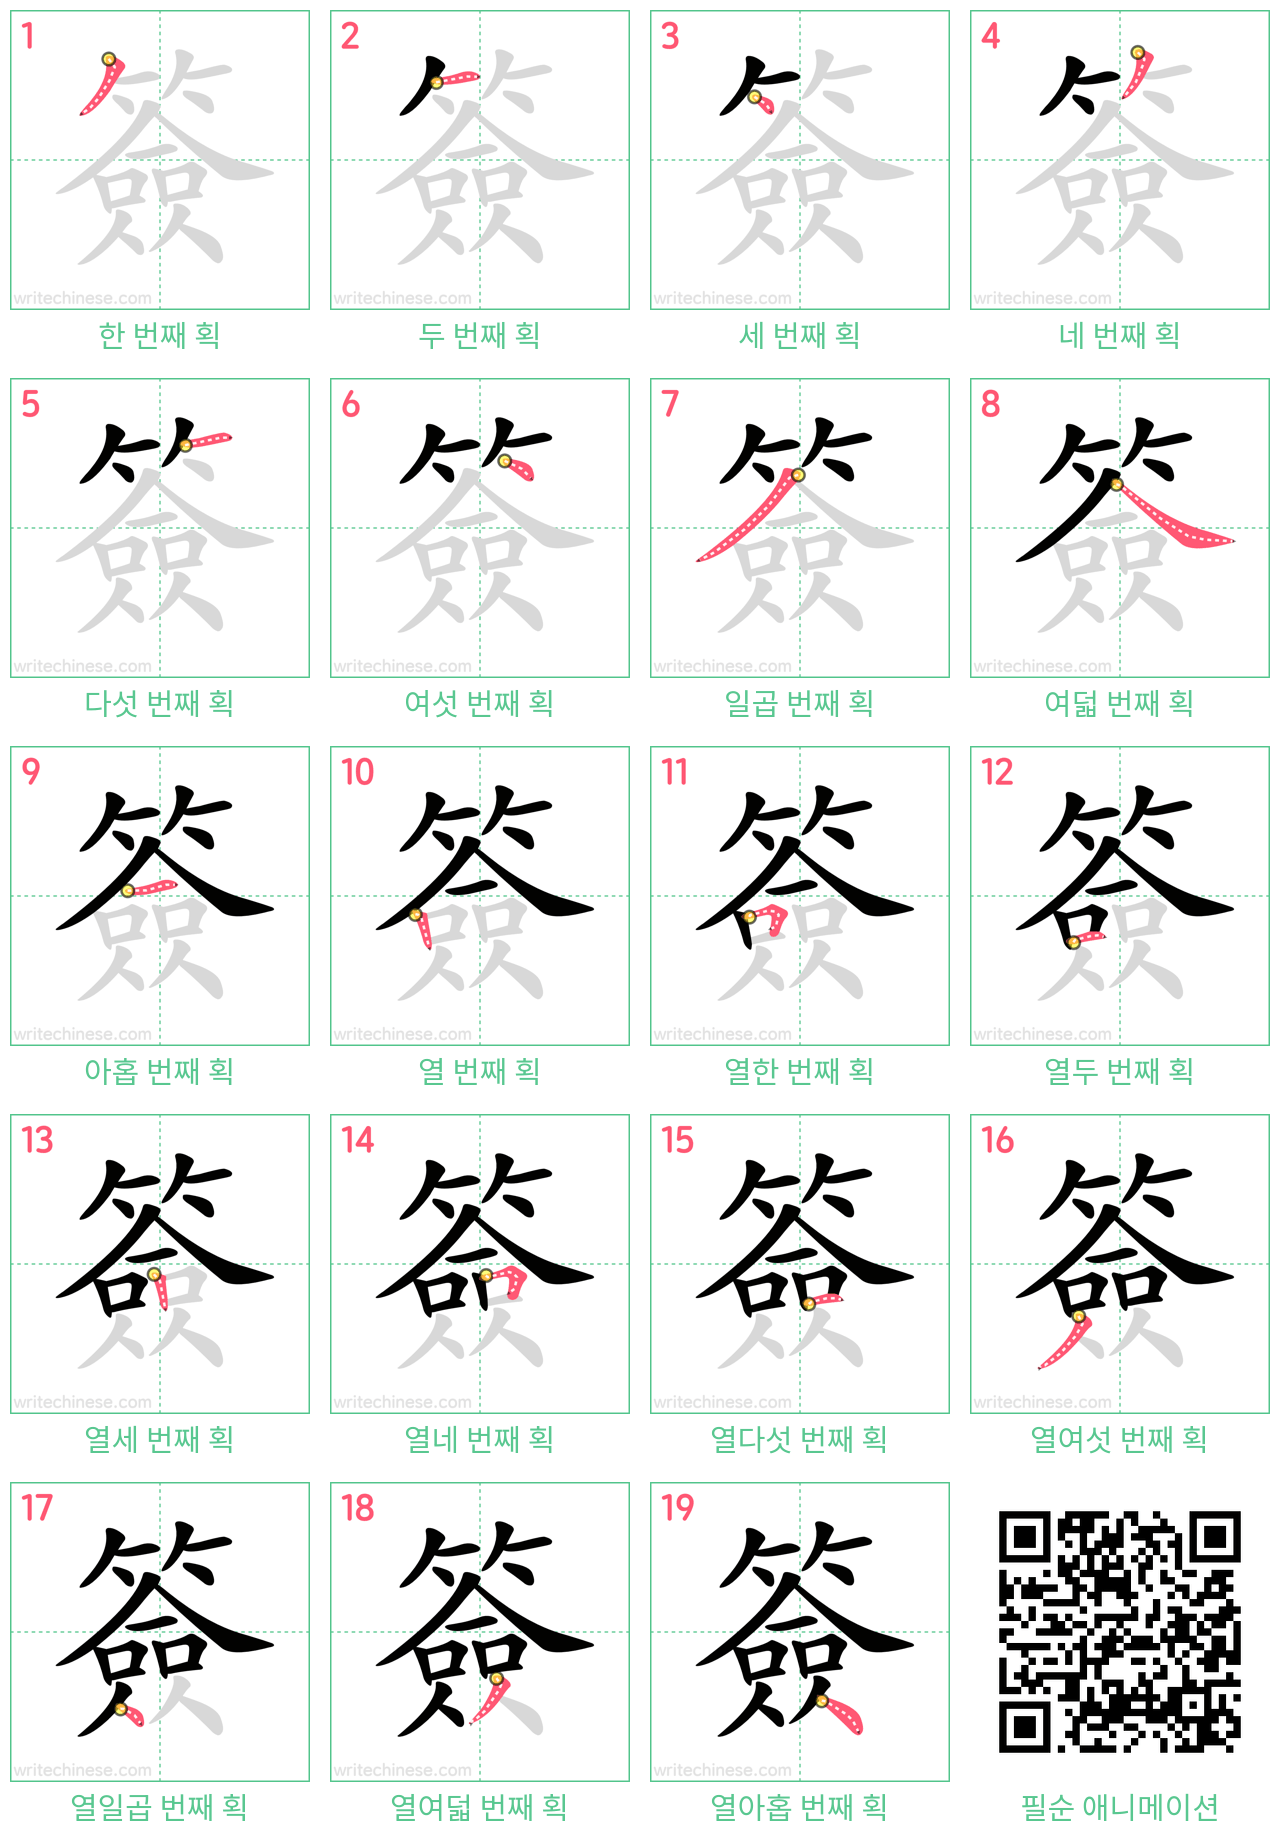 簽 step-by-step stroke order diagrams